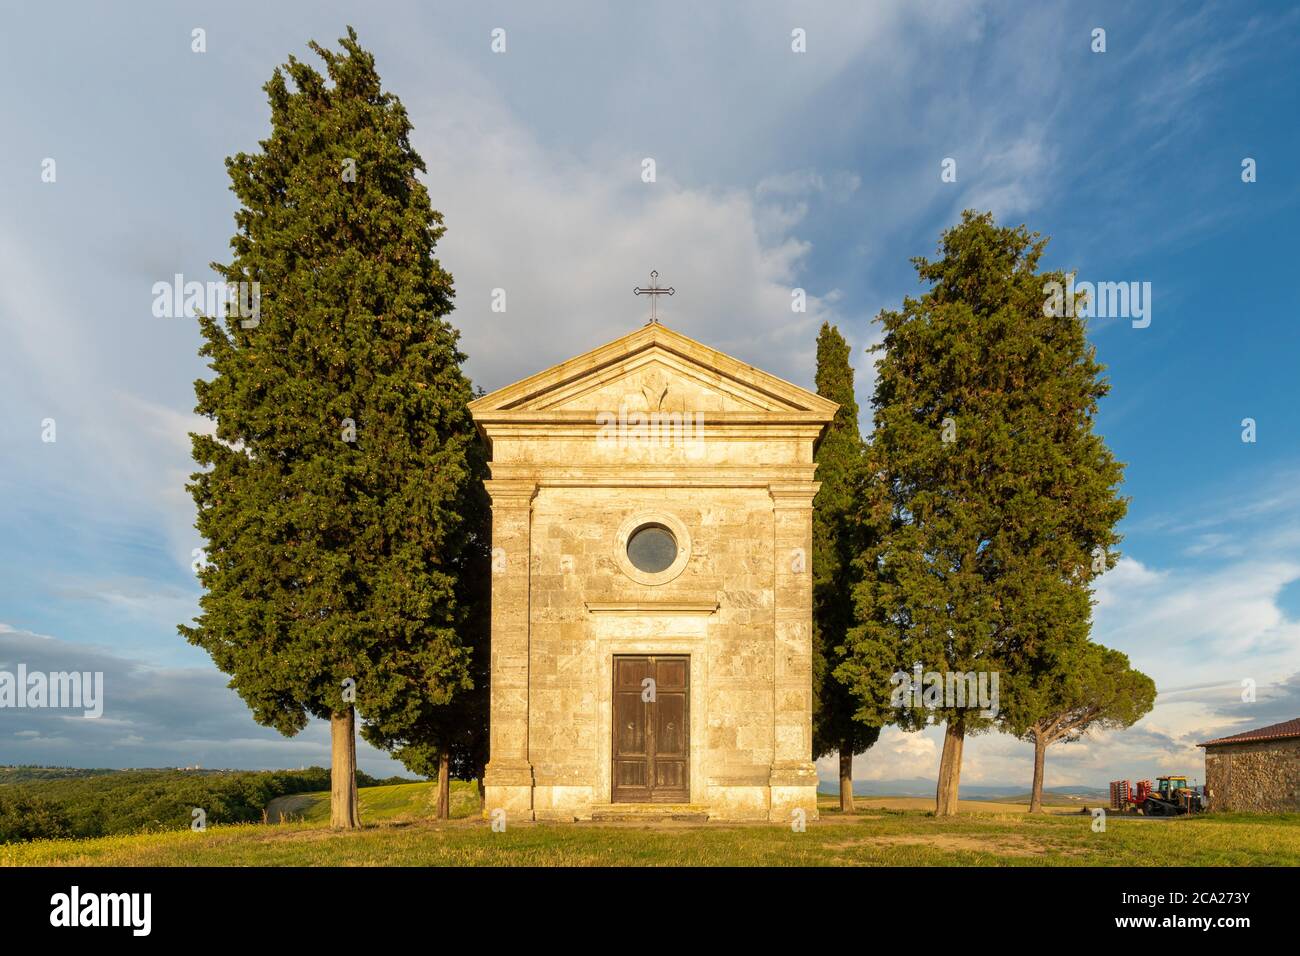 Vista frontale dell'iconica cappella di Vitaleta, in cima alla collina toscano, circondata da cipressi, sotto un cielo blu estivo con nuvole striate Foto Stock